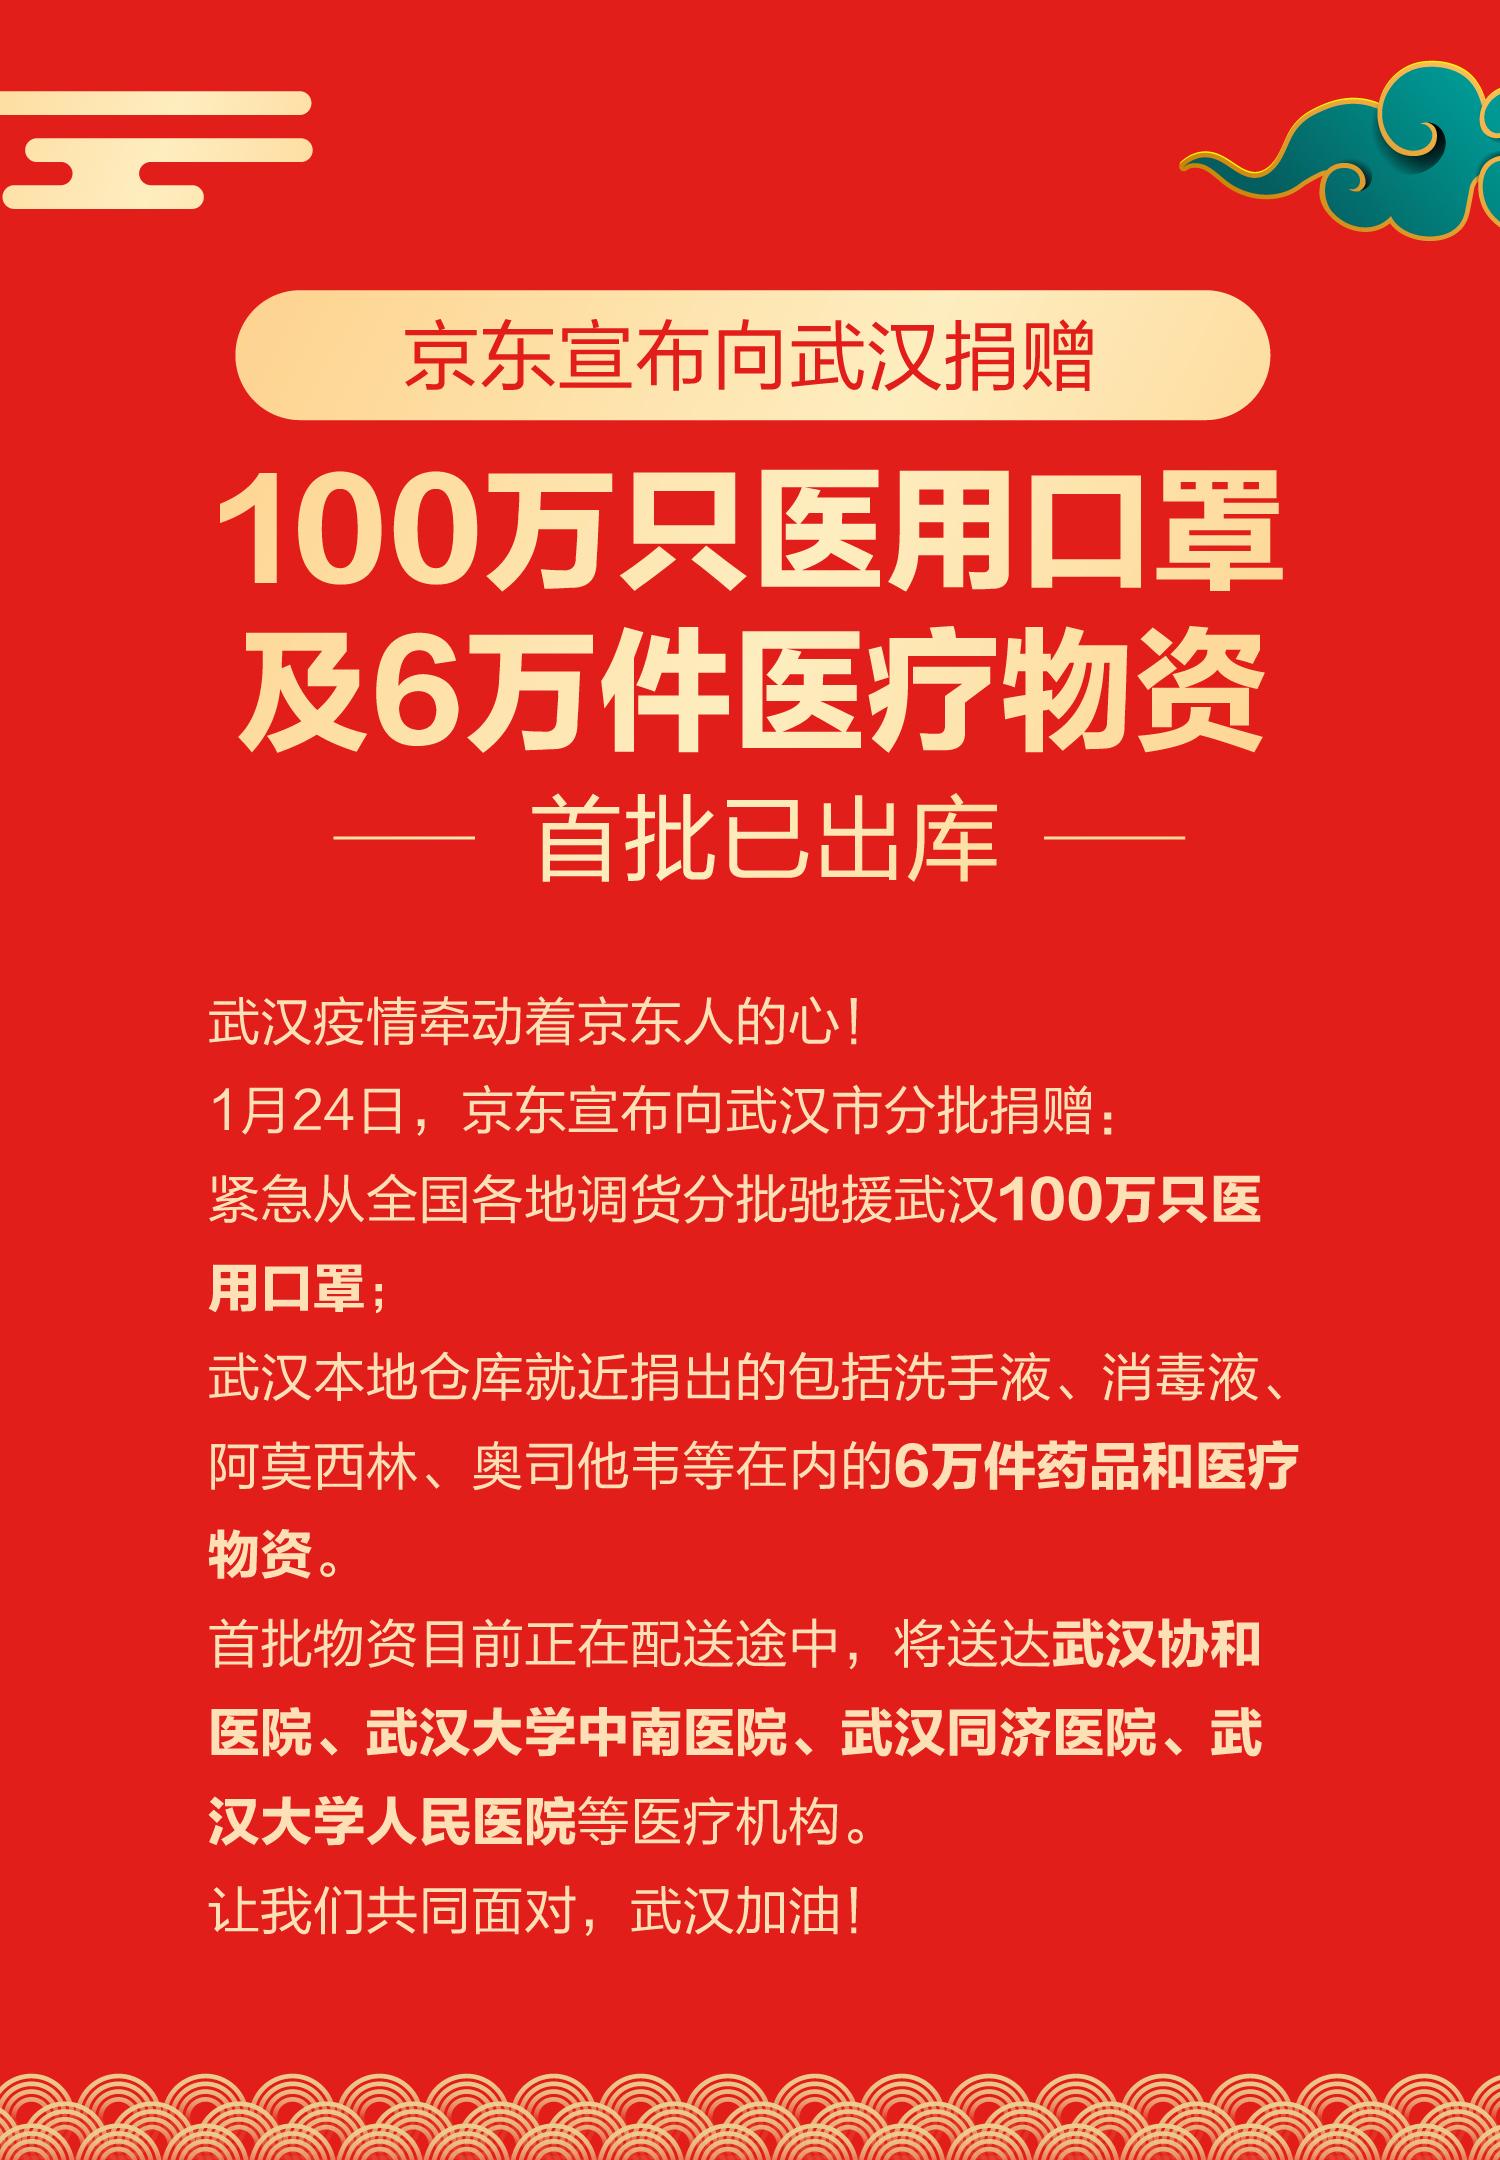 京东宣布向武汉市捐赠100万只医用口罩及6万件医疗物资 首批已出库